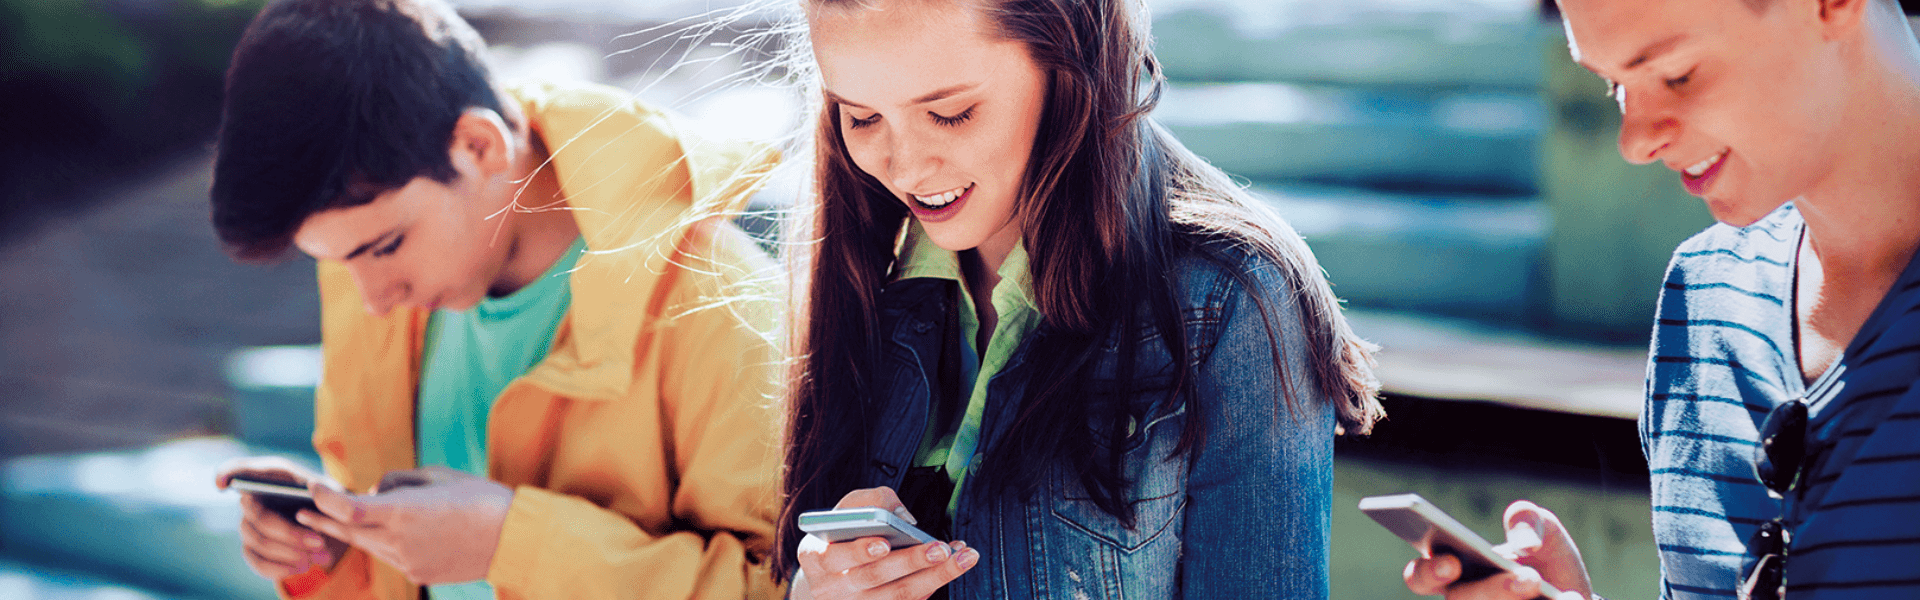 Ein lächelndes Teenager-Mädchen betrachtet seinen Smartphone-BIldschirm